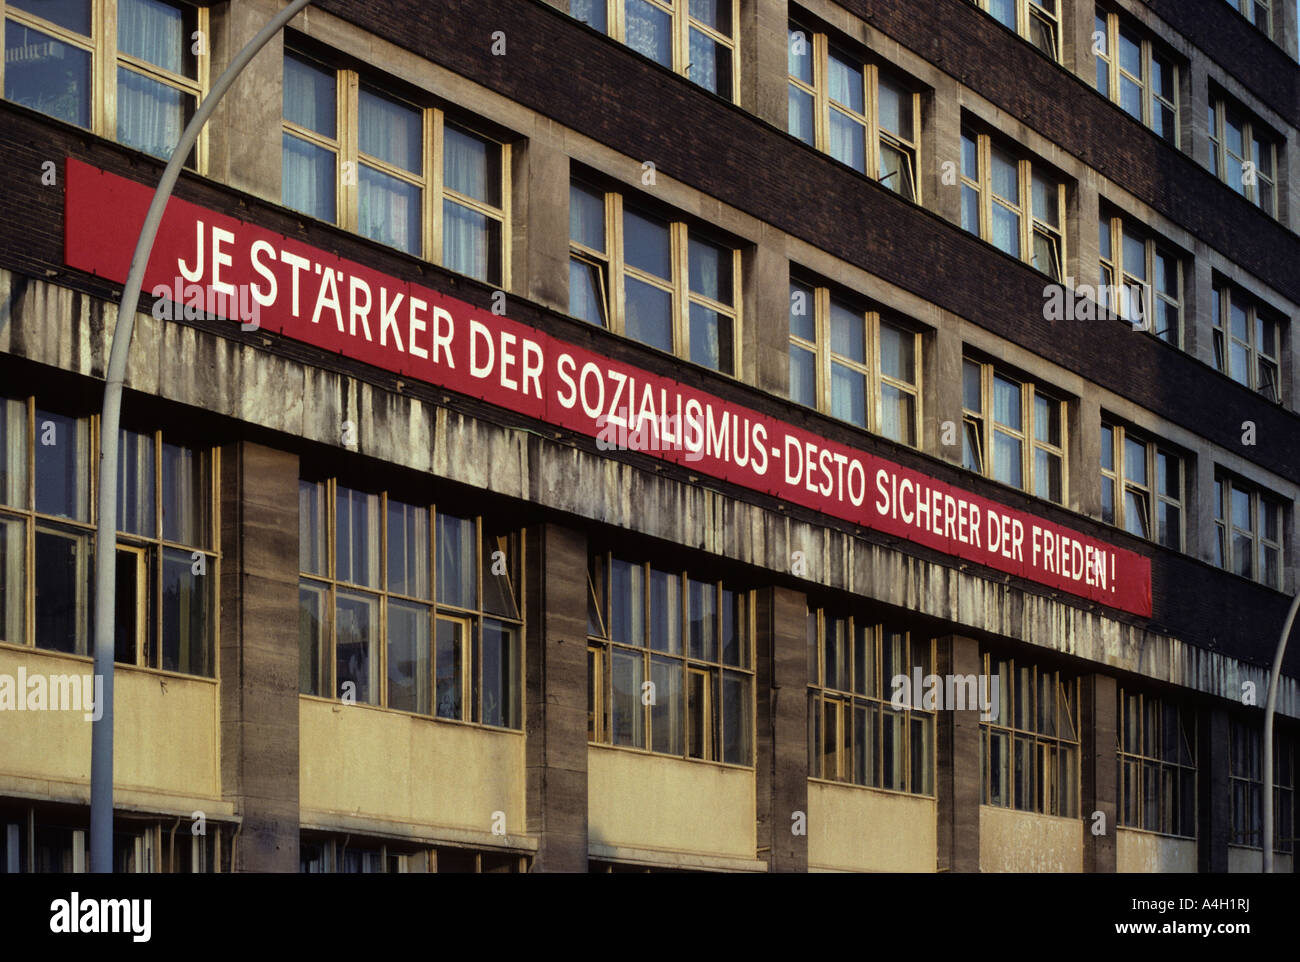 Socialist propaganda at a facade, East-Berlin, GDR Stock Photo